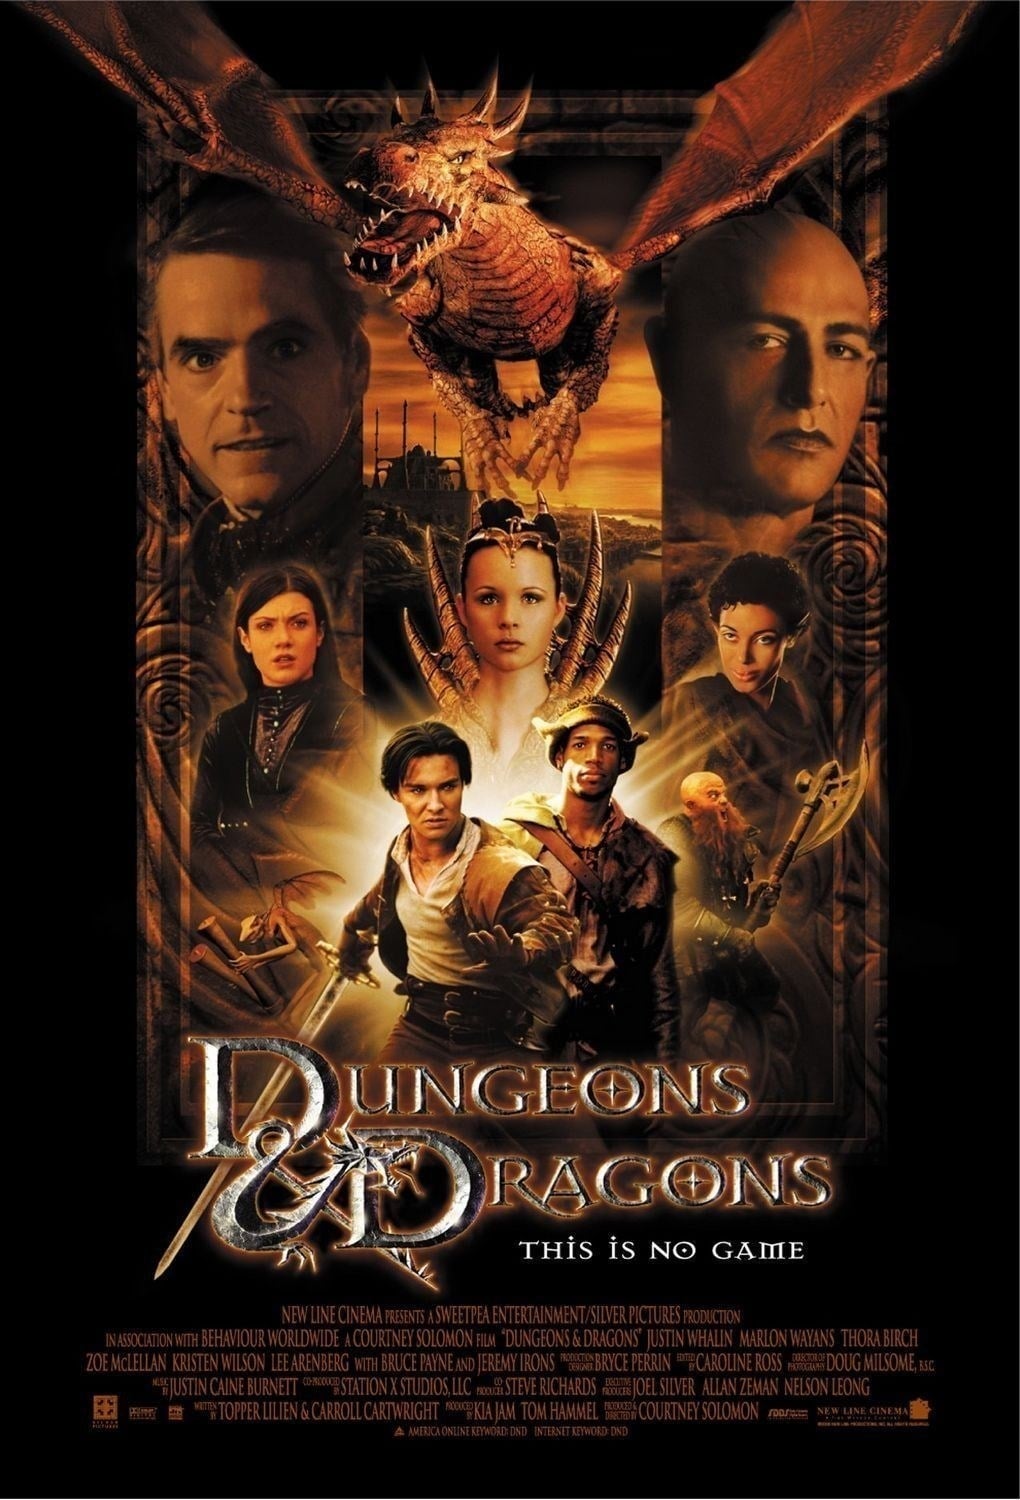 Plakat von "Dungeons & Dragons"